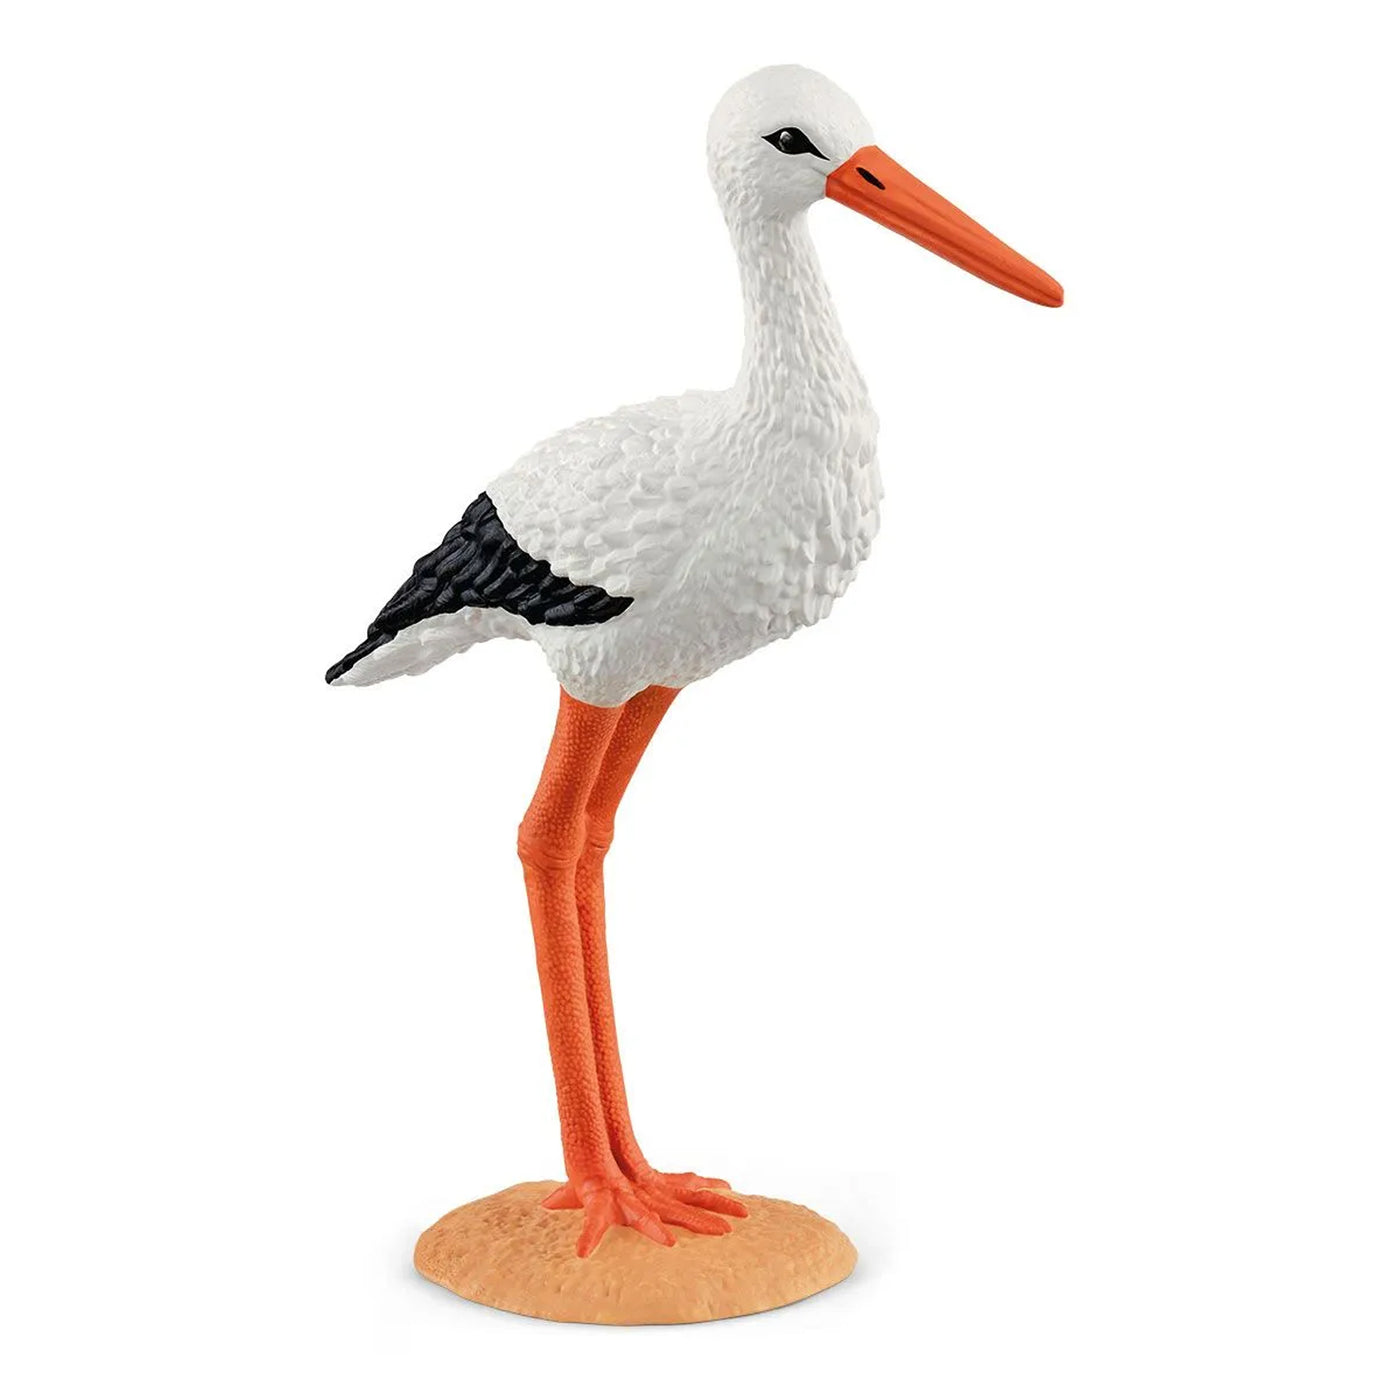 Schleich Farm World Stork small toy figurine